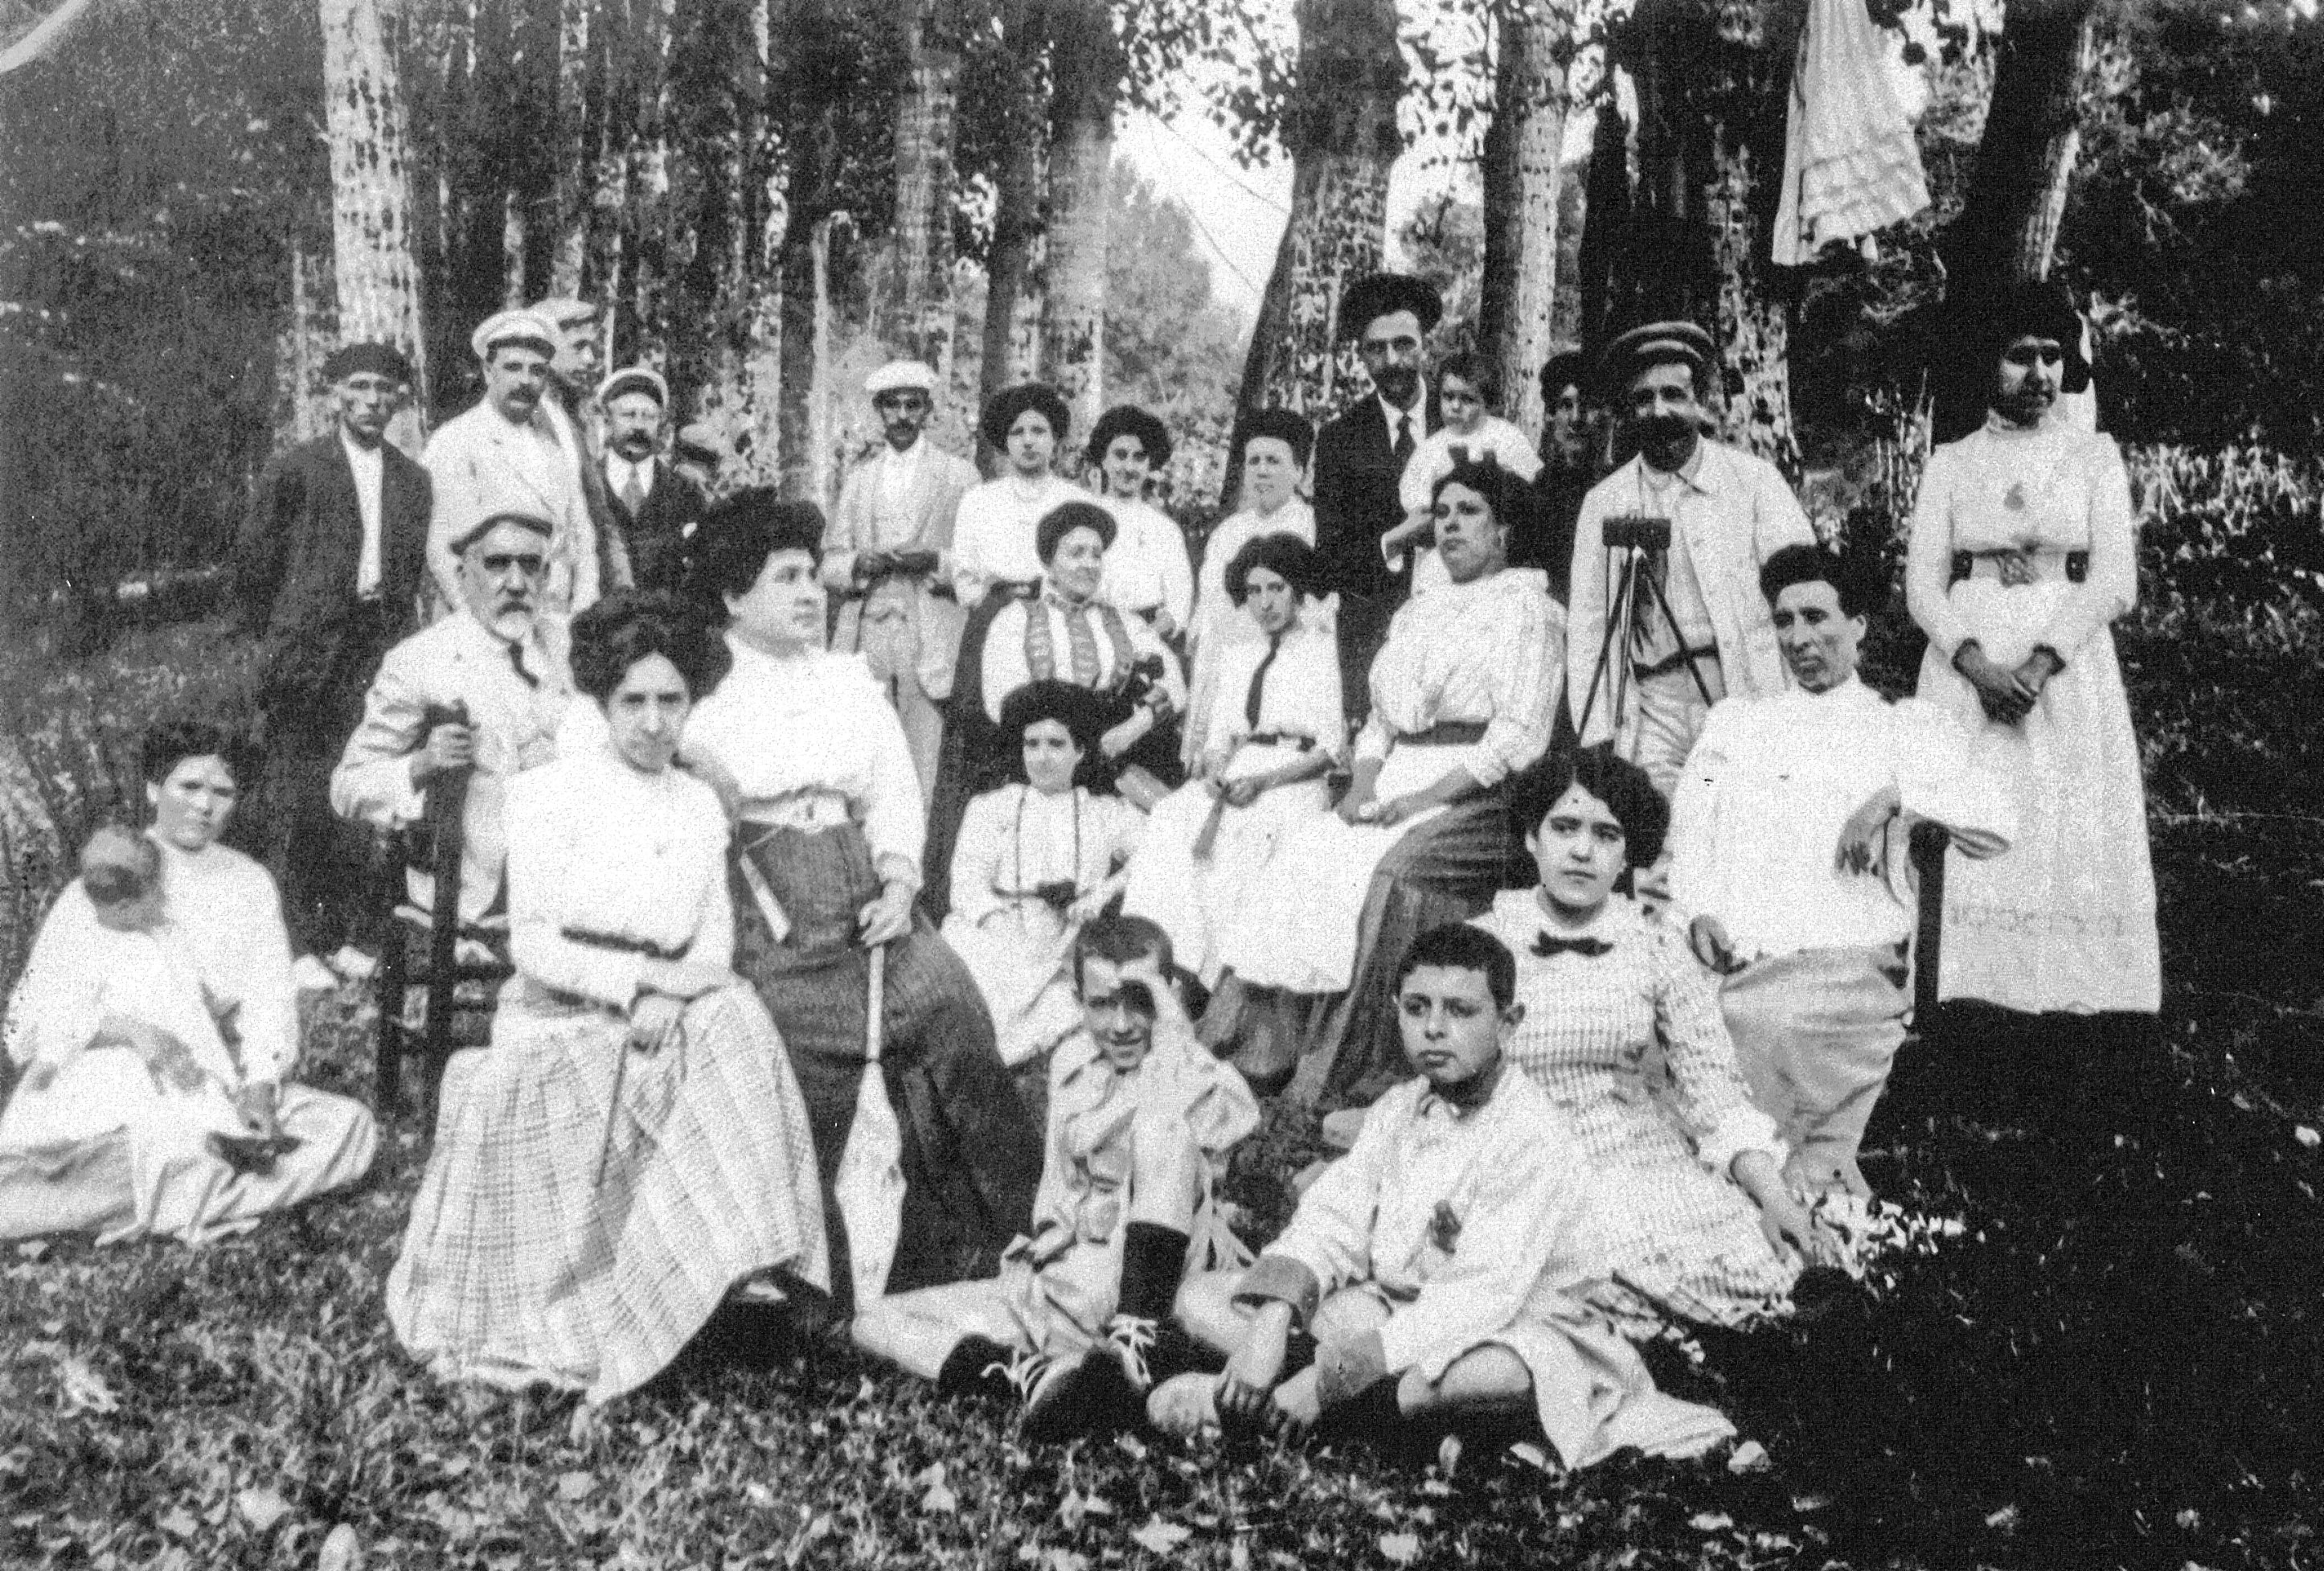 La família Julià, estiuejants de Cardedeu, en una sortida a una font propera al poble en una fotografia de primers del segle passat